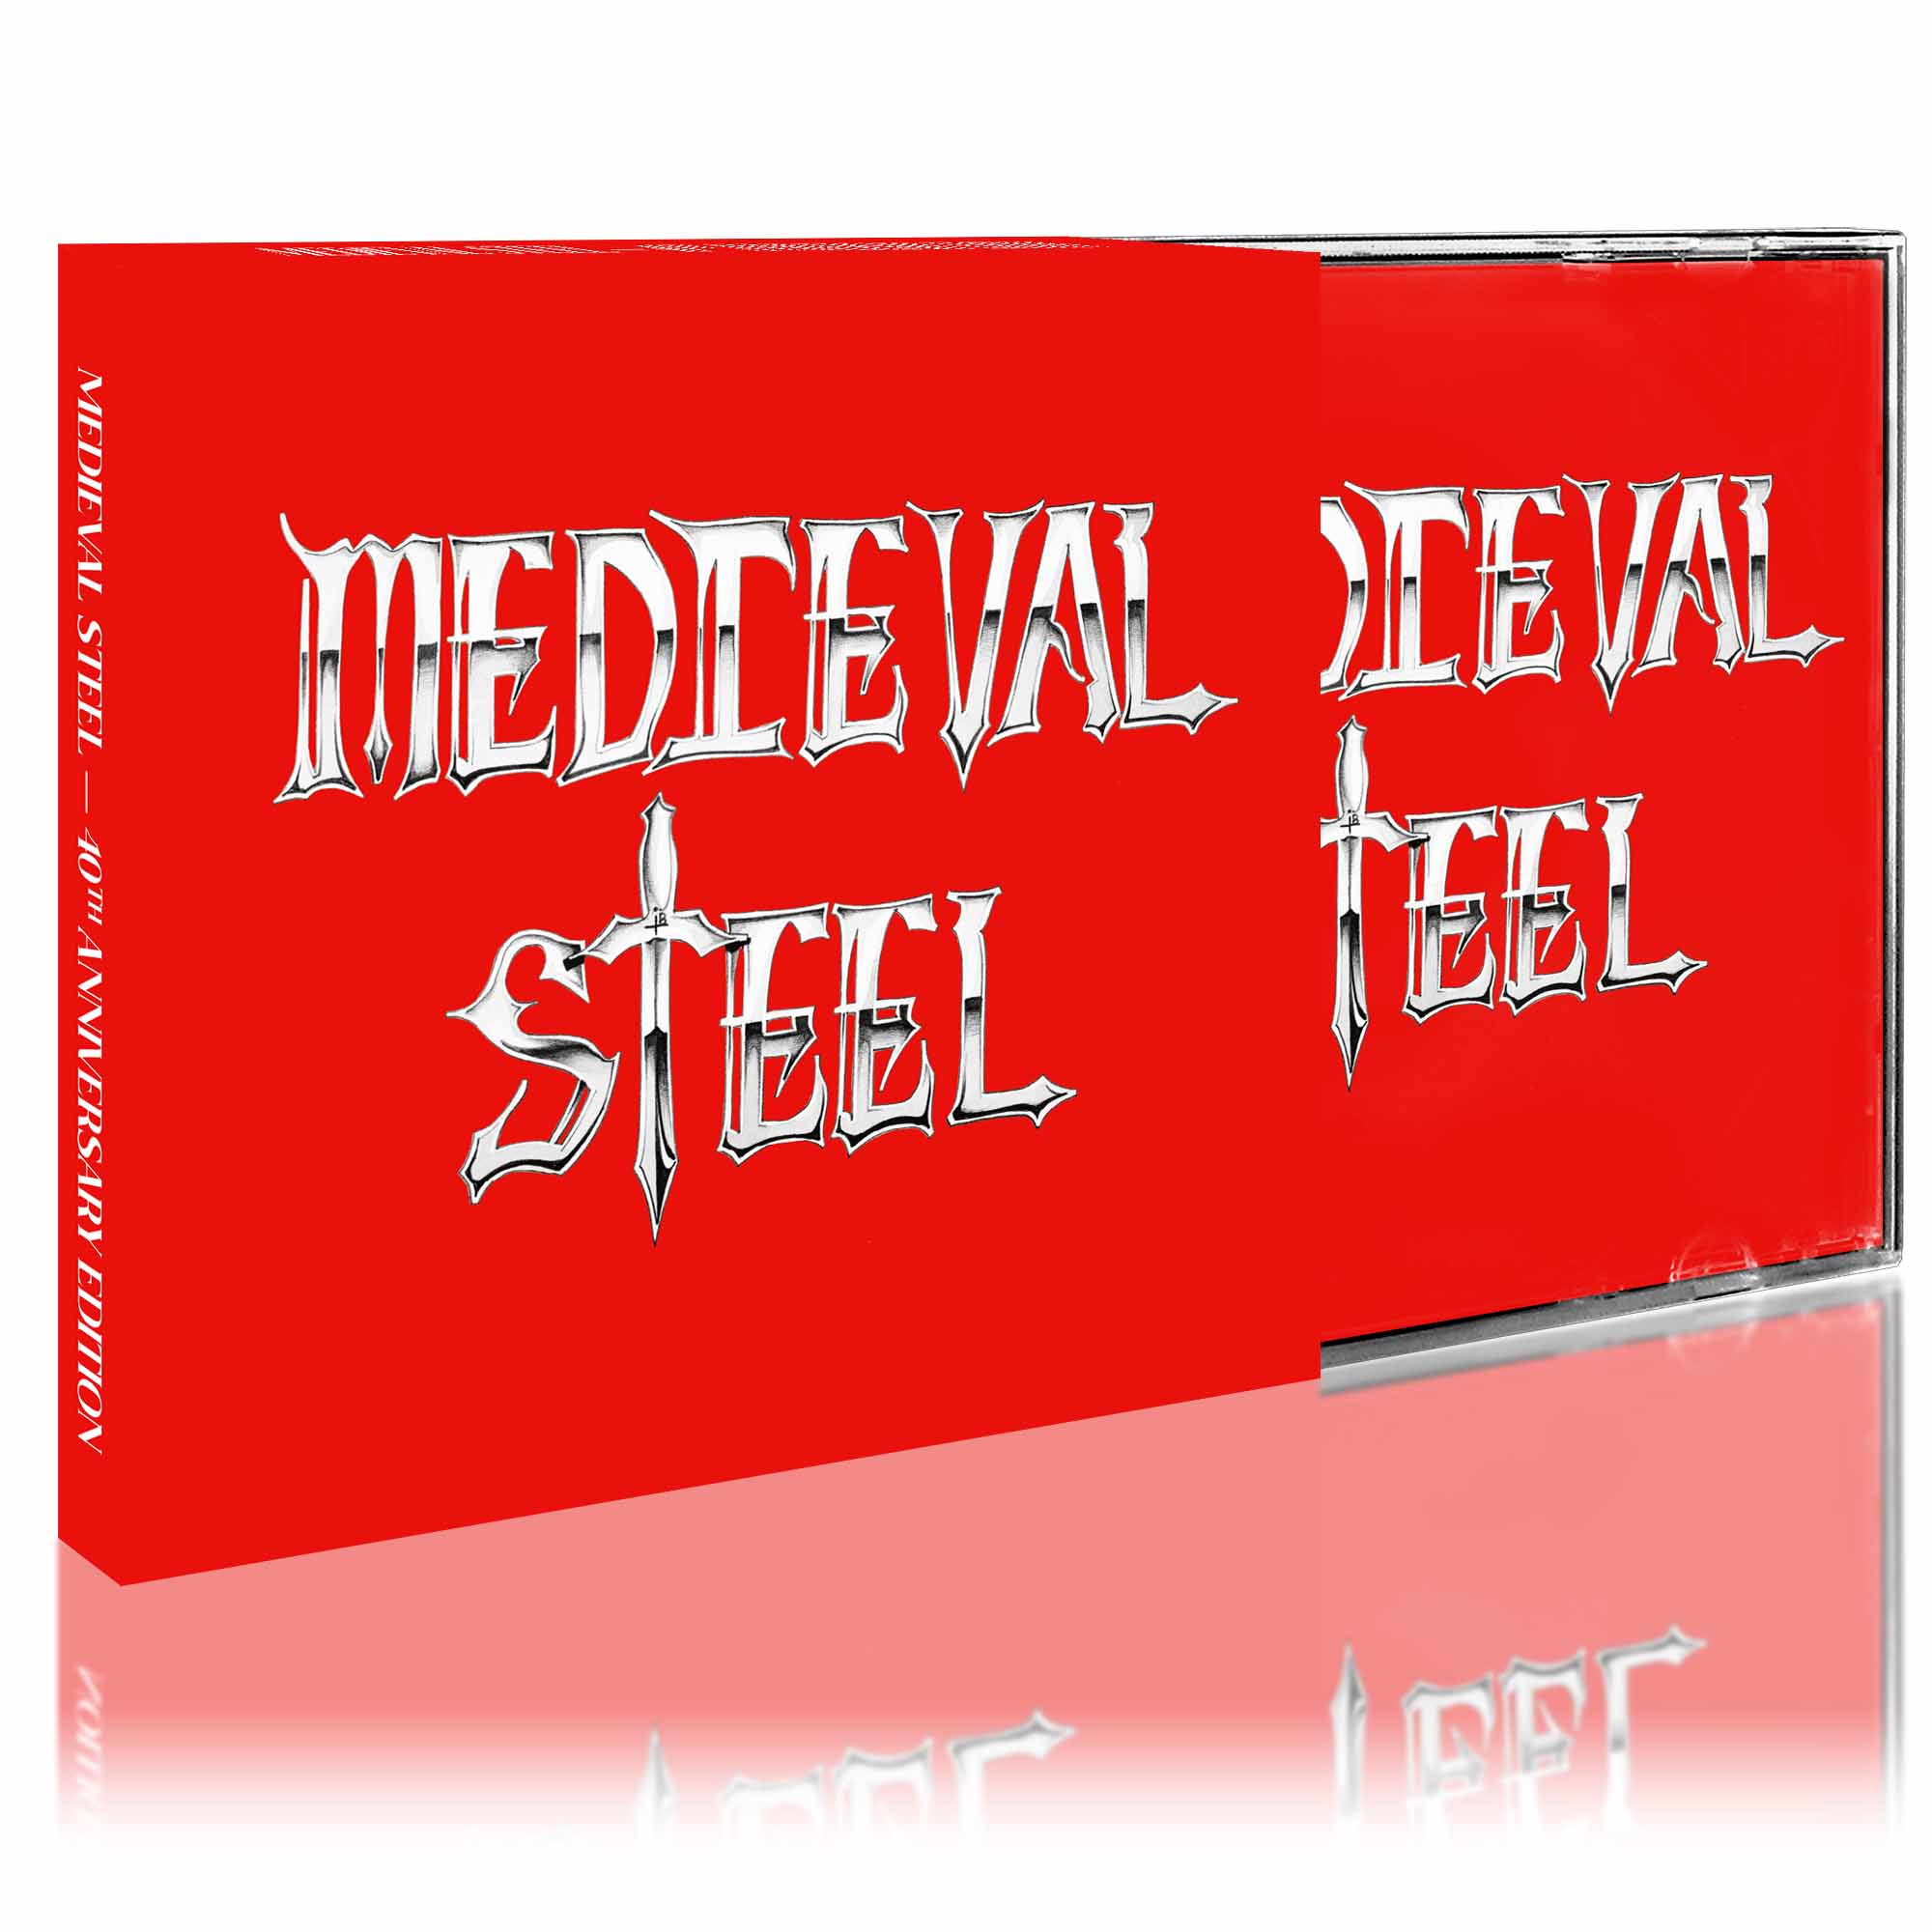 MEDIEVAL STEEL - s/t  MCD